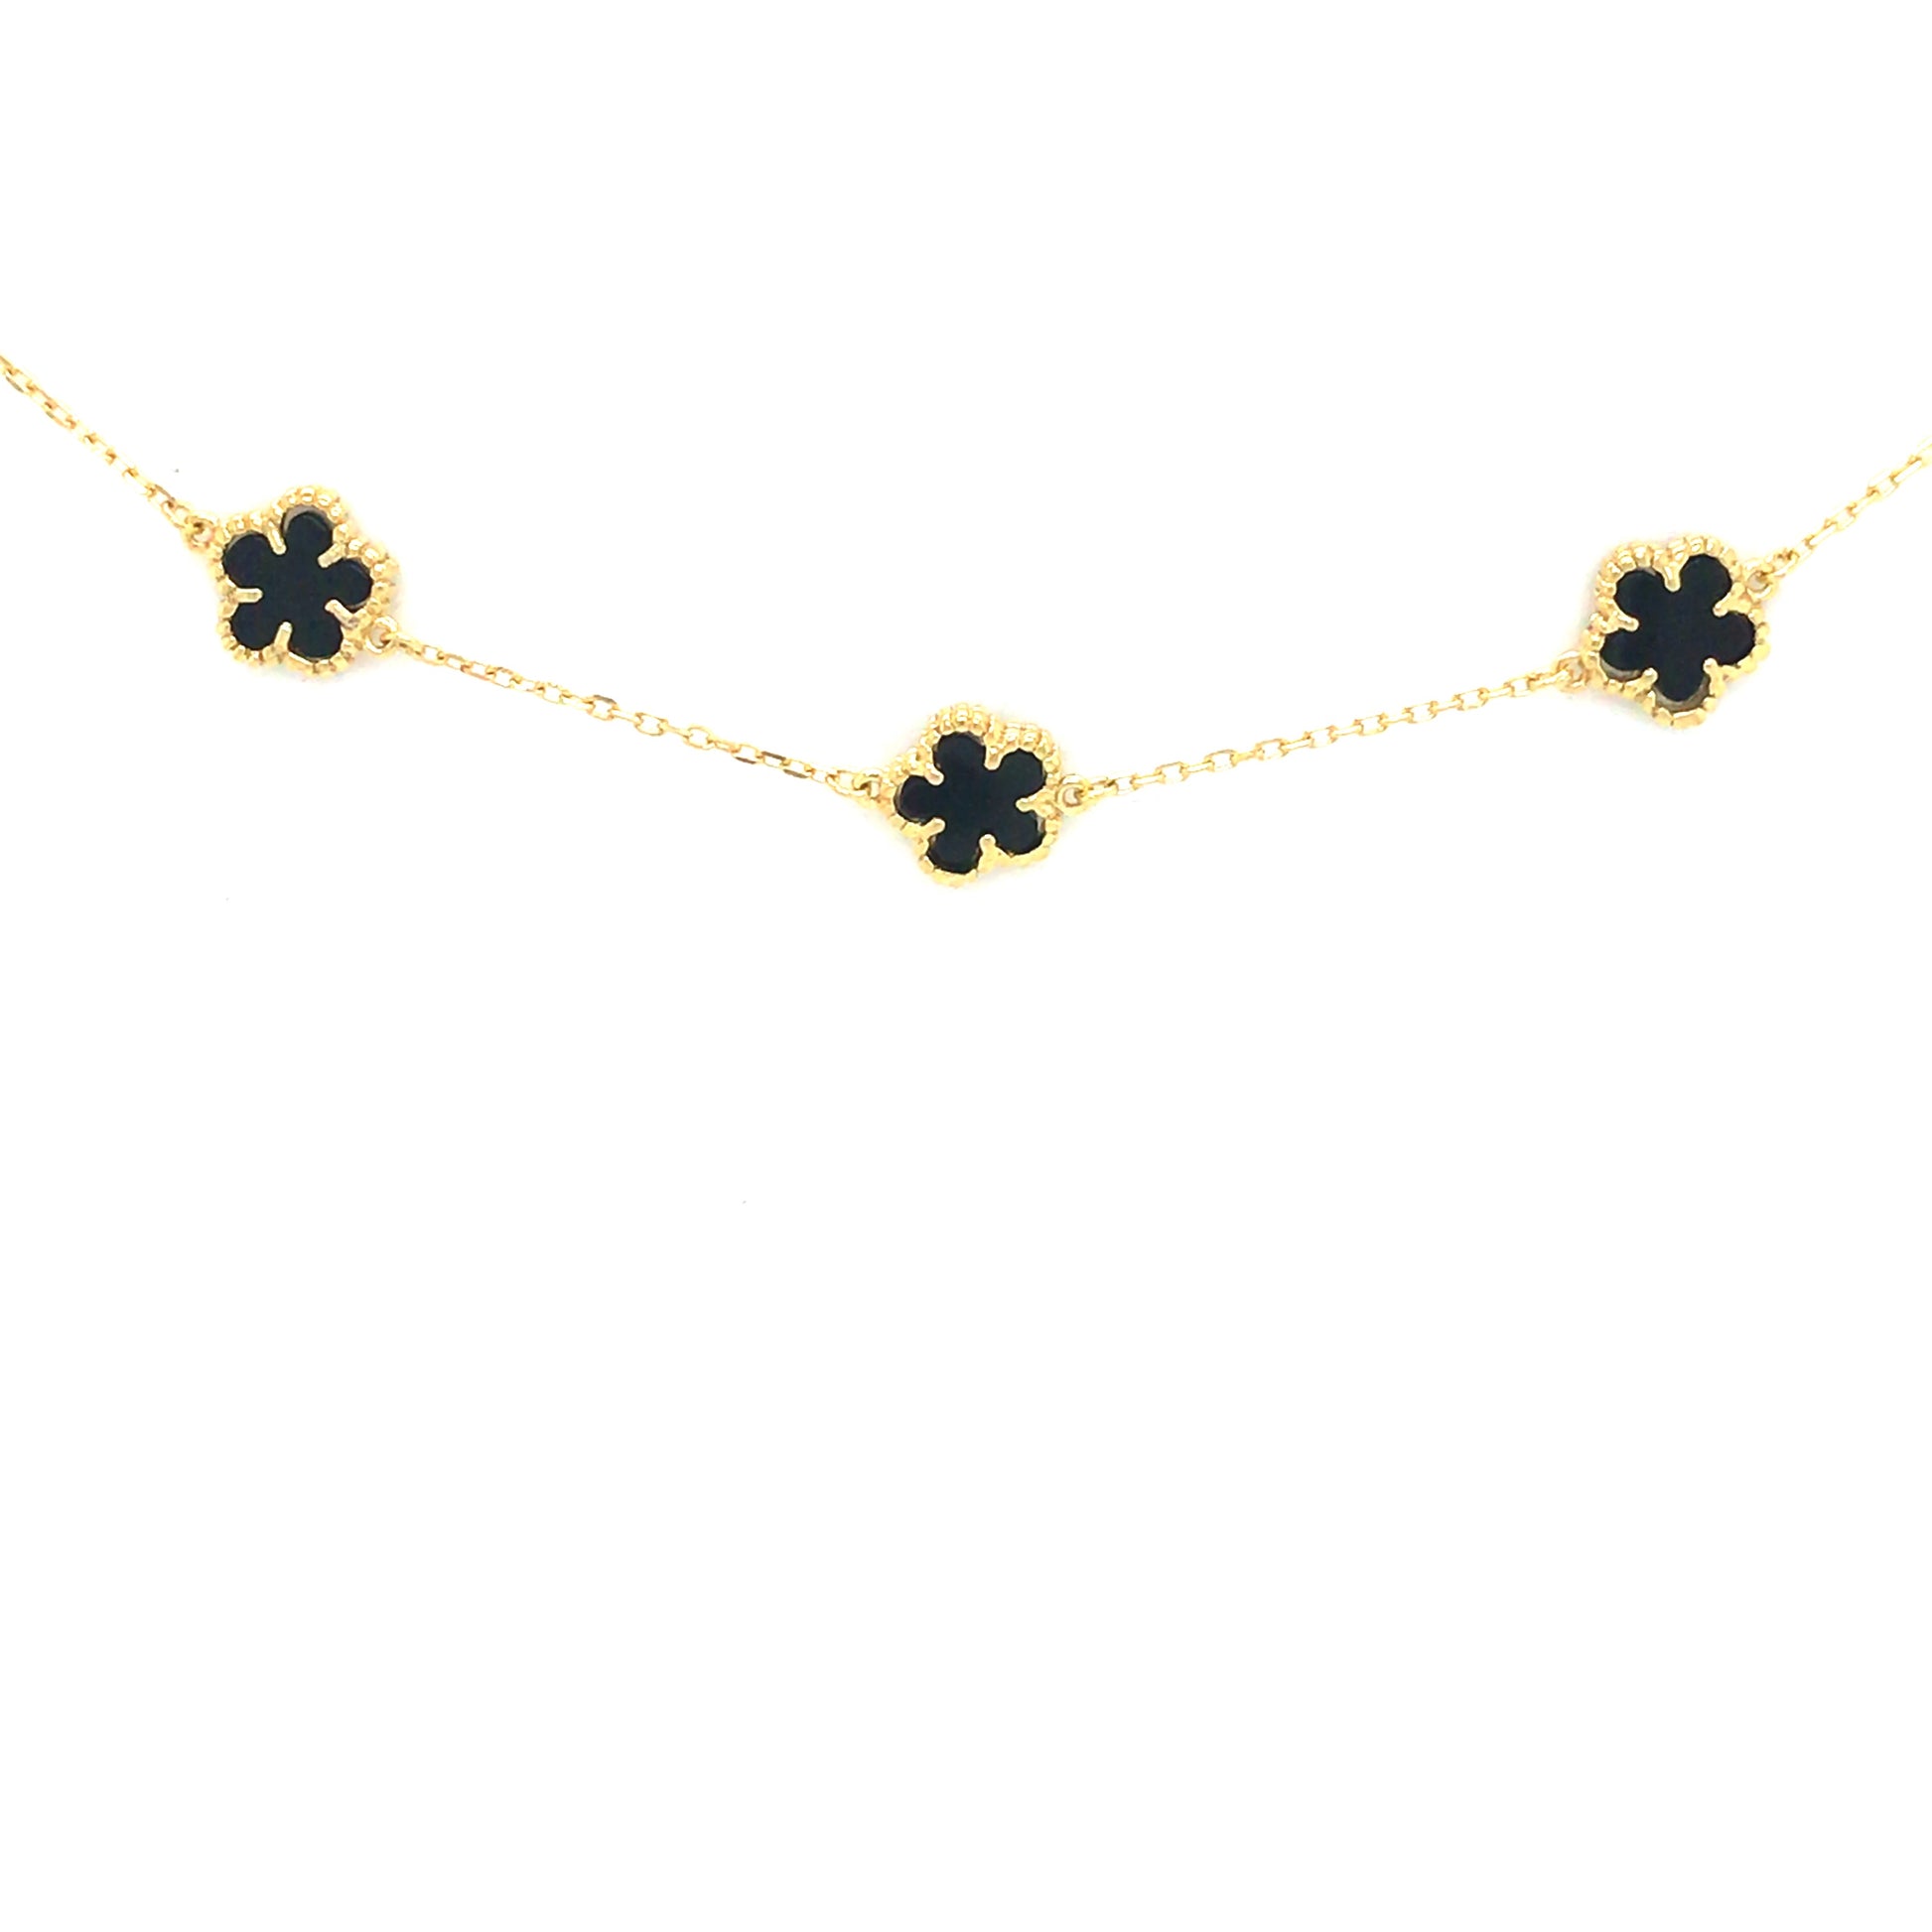 Sterling Silver Flower Bracelet - HK Jewels